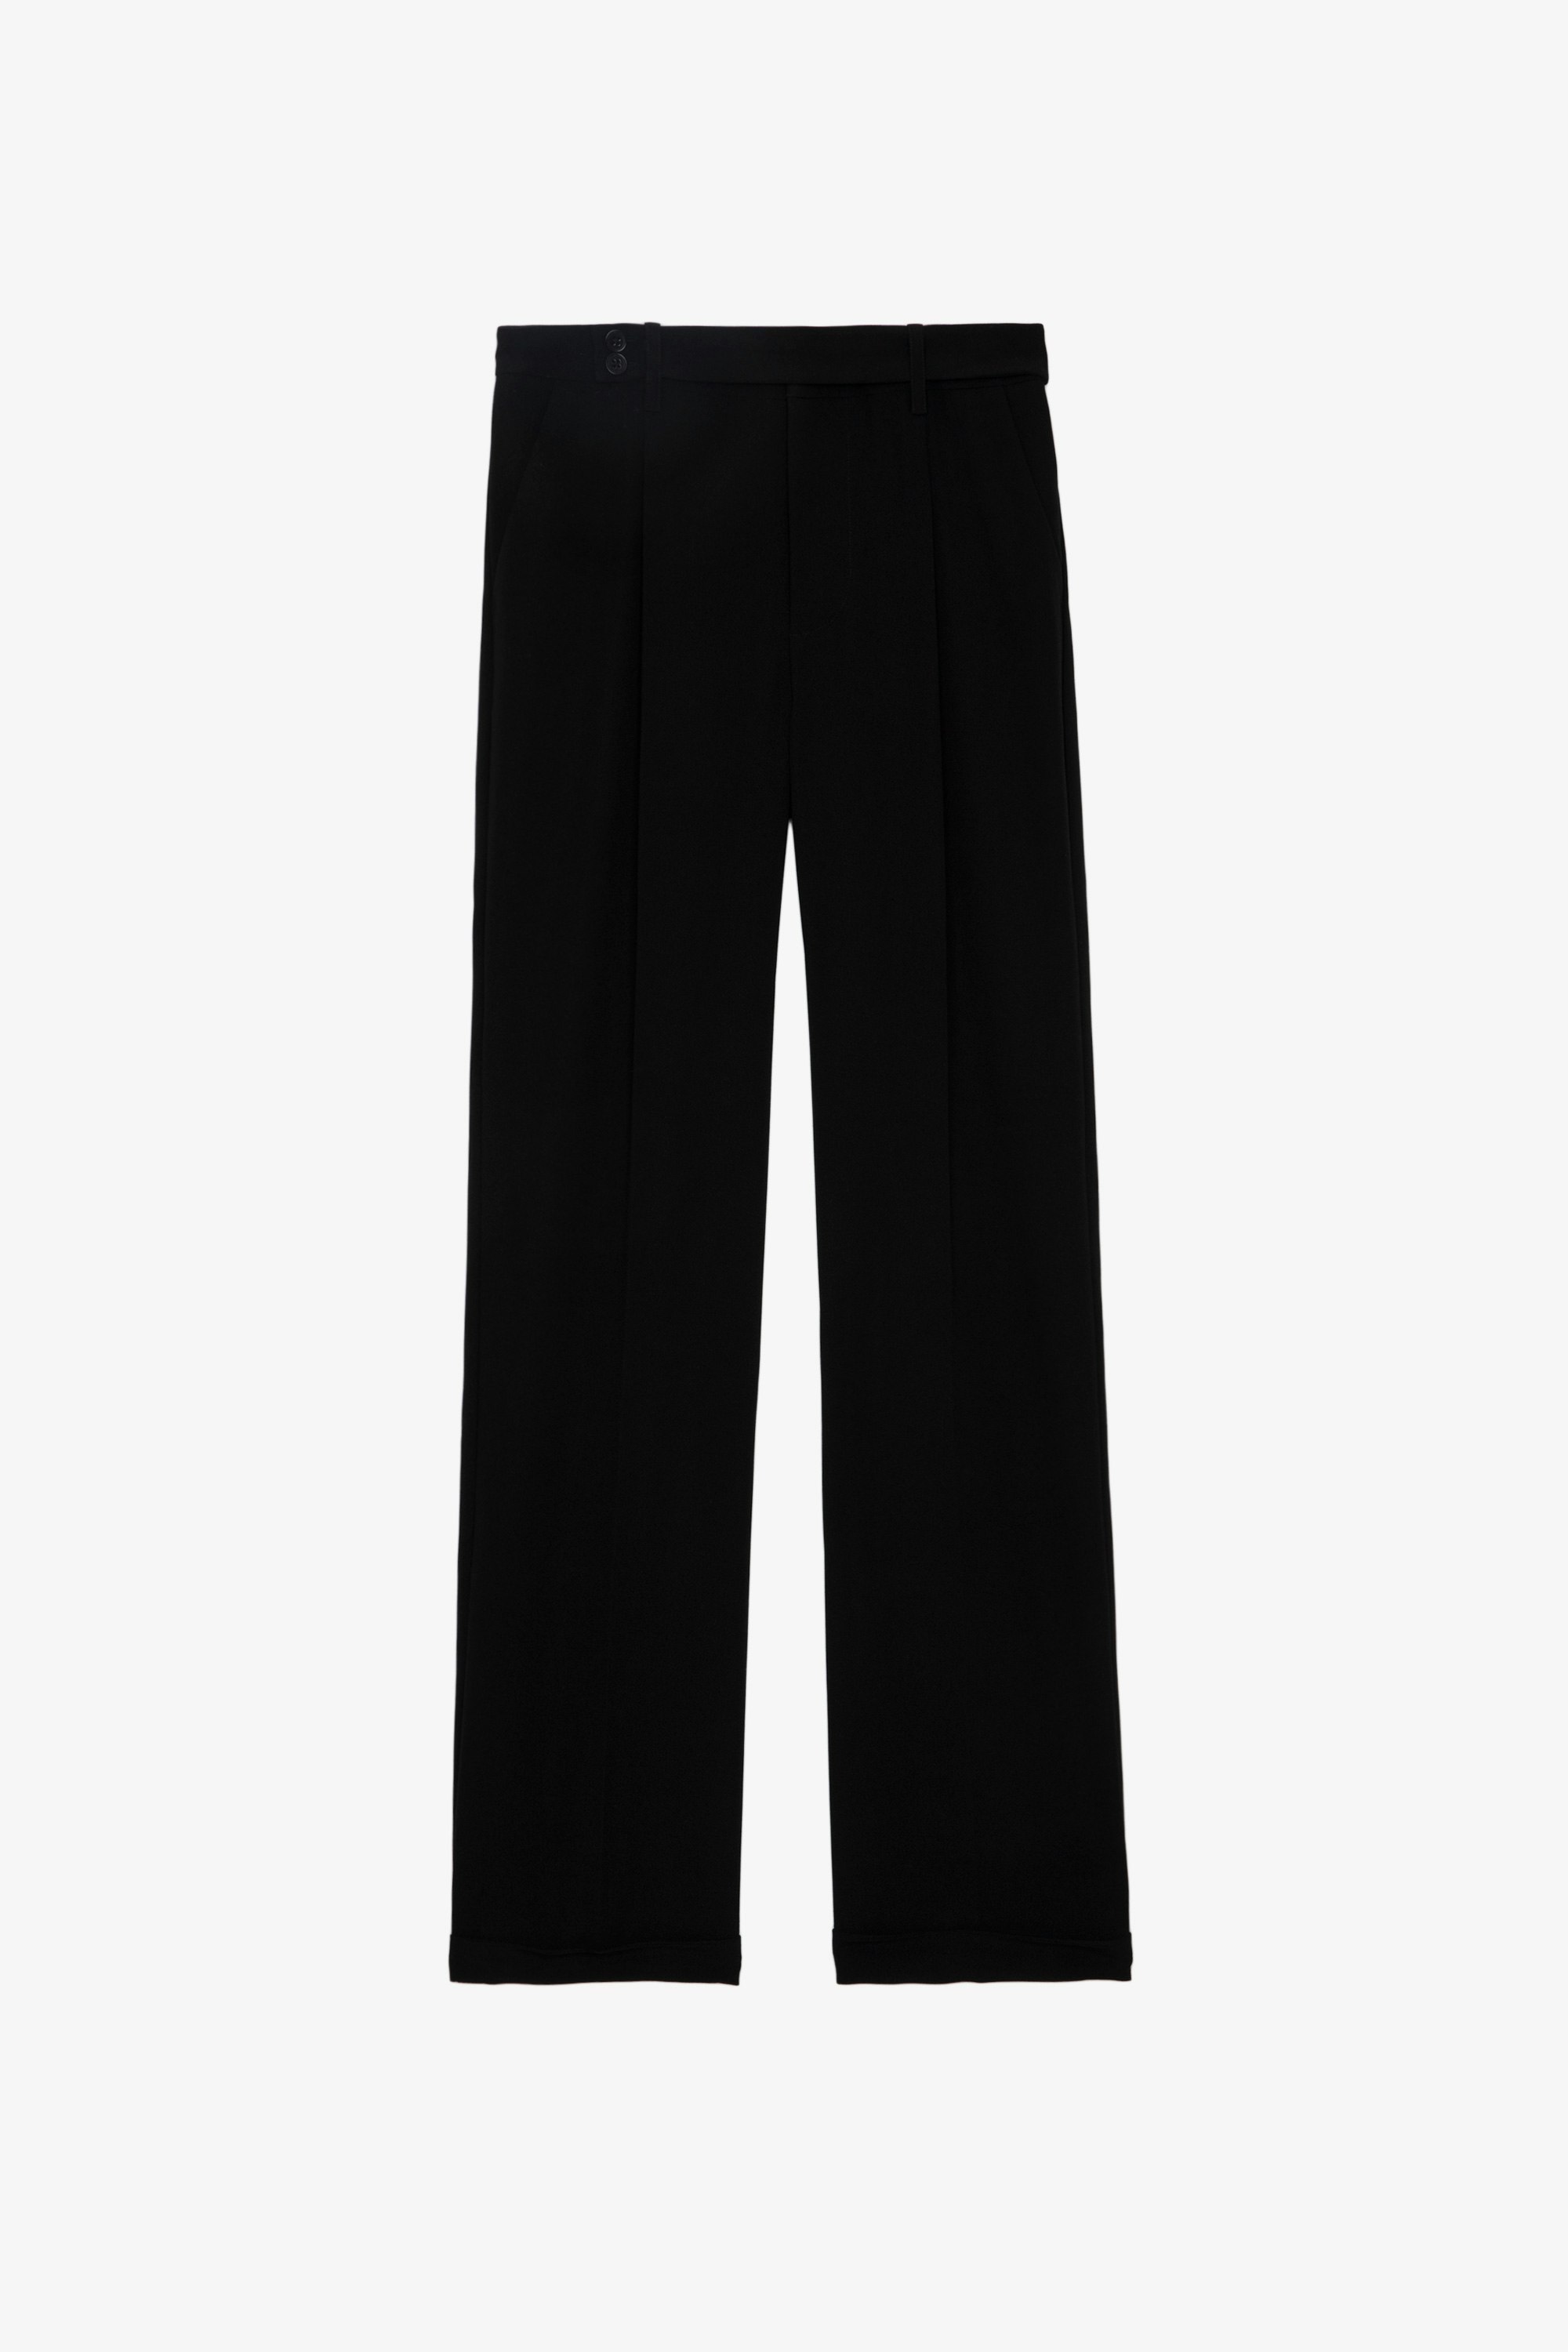 Pantalon Pura - Pantalon de tailleur en crêpe noir à poches et ourlets.